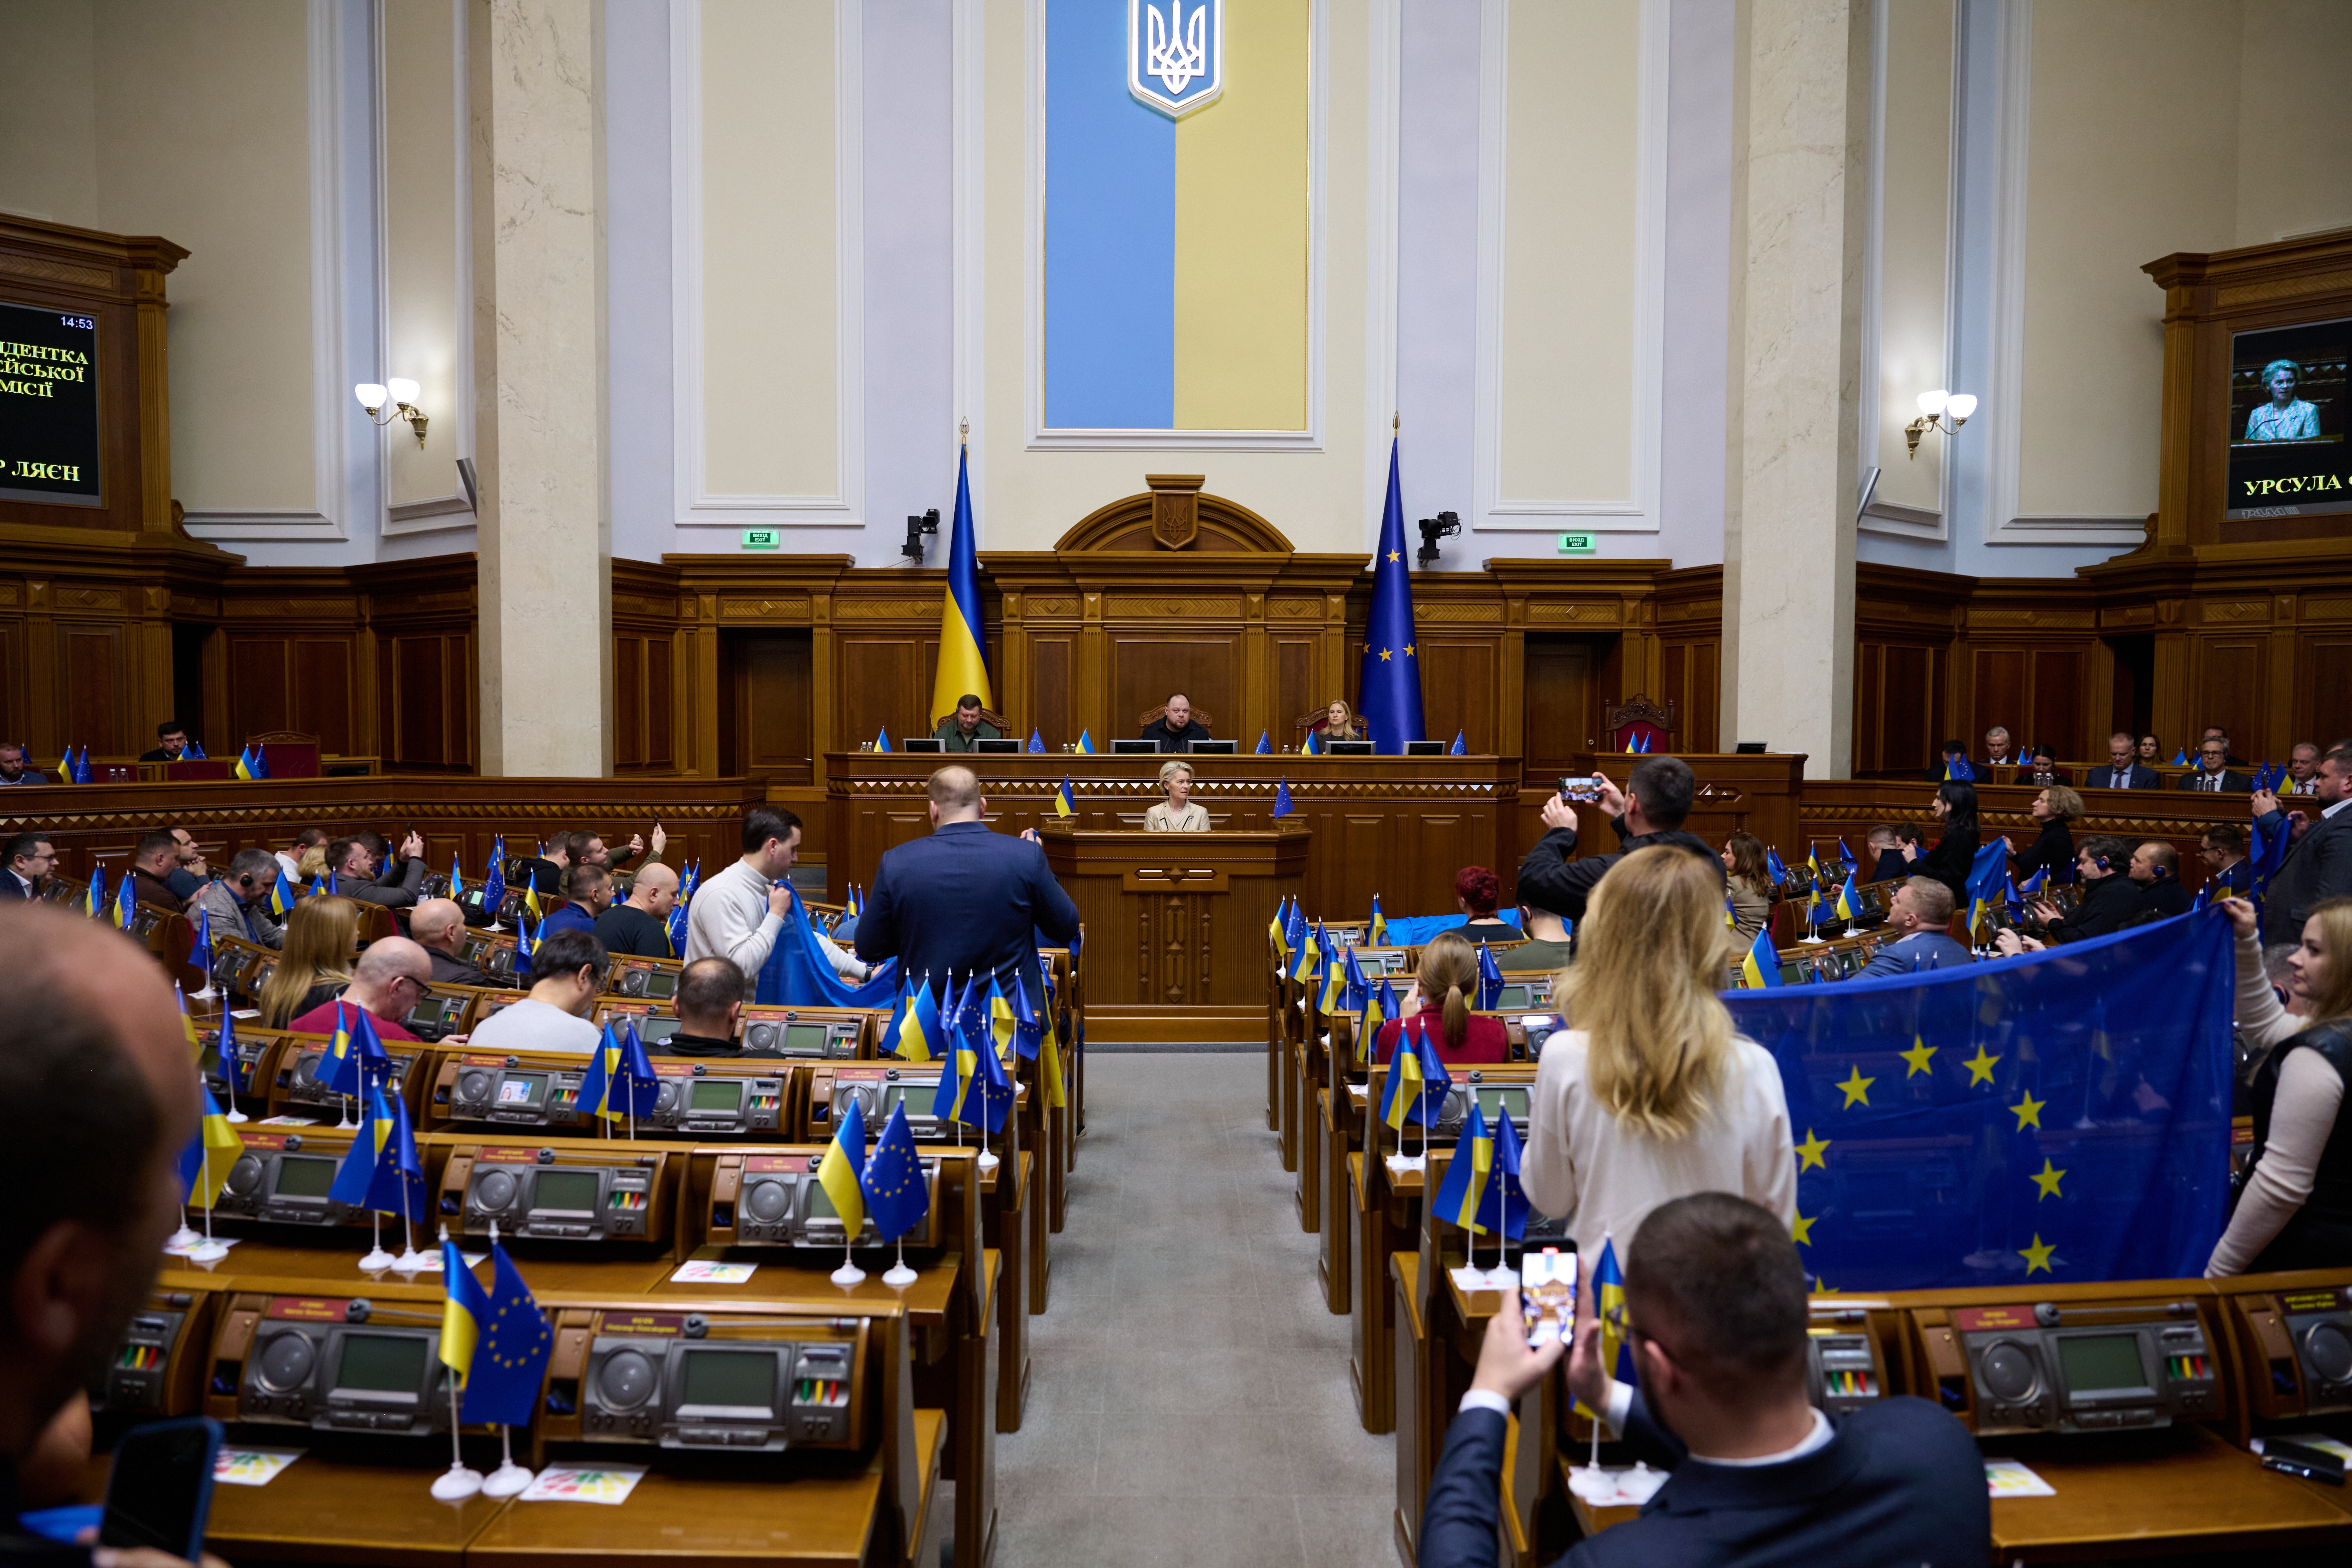 Parliament in Ukraine. Credit: Shutterstock, photo contributor: Paparazzza